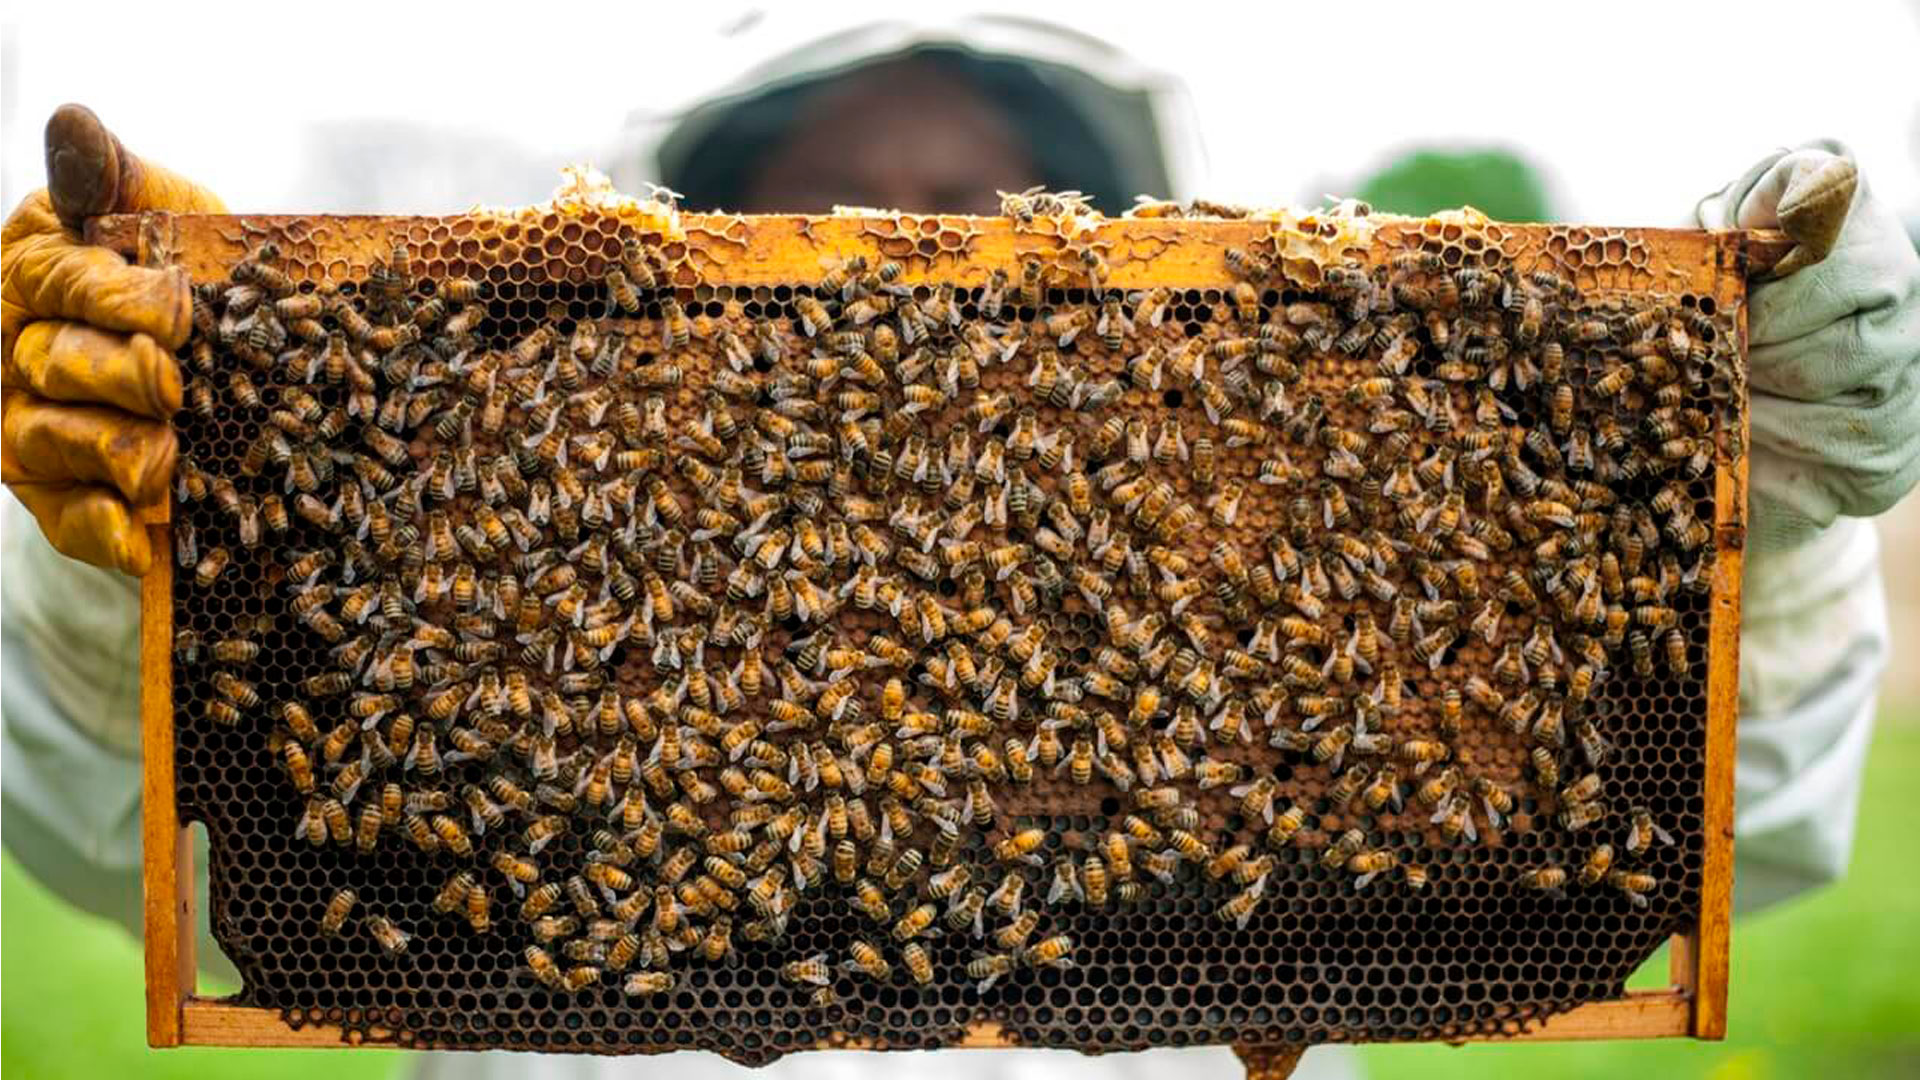 Panal de cera con abejas